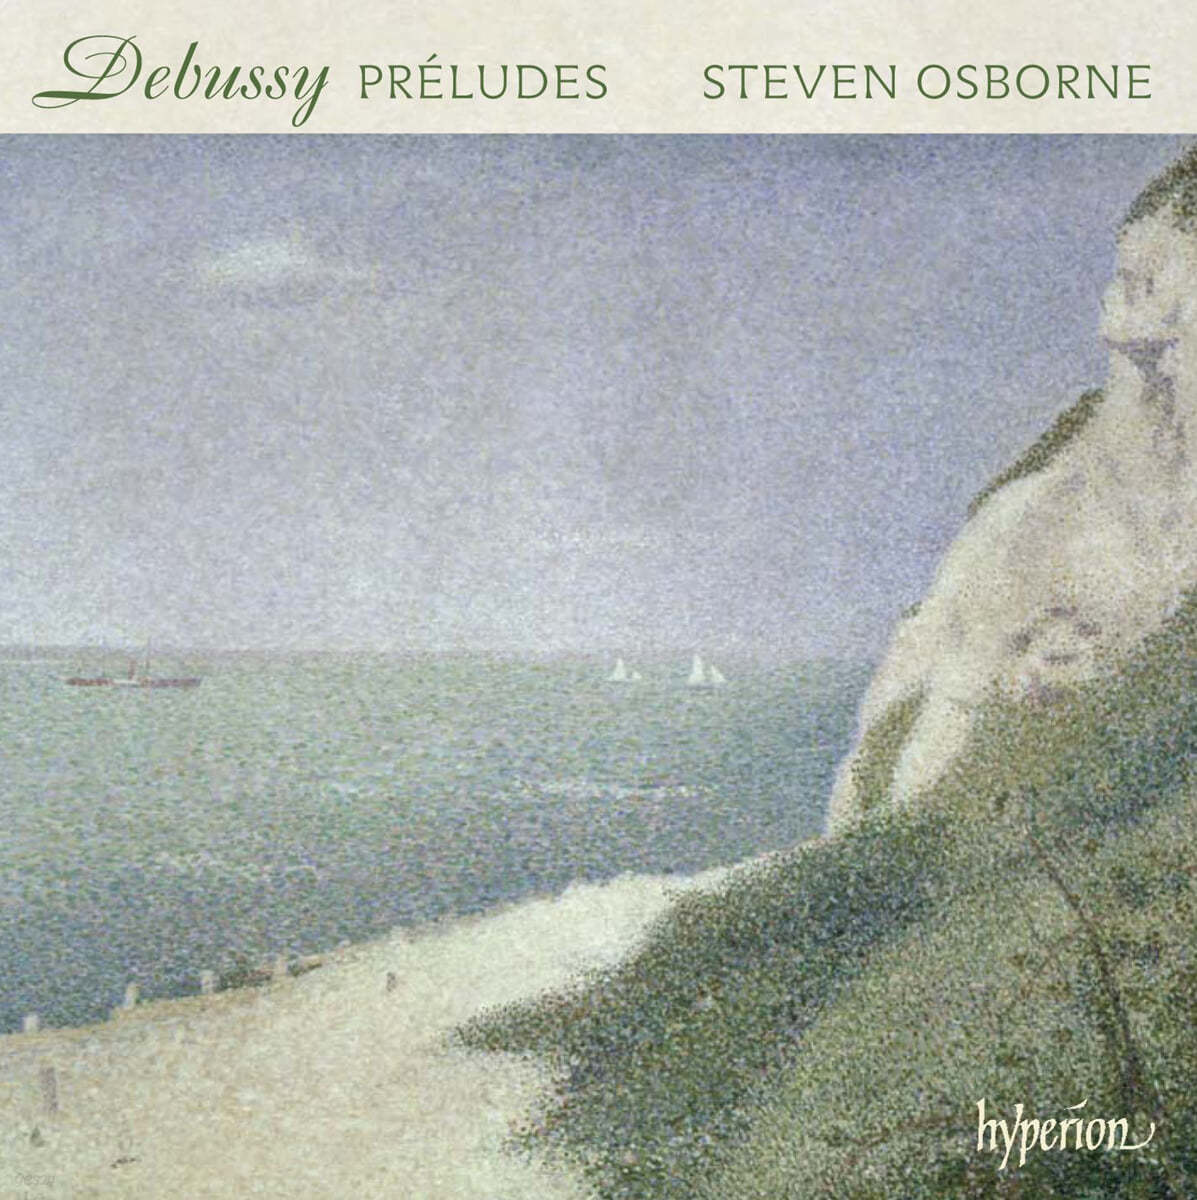 Steven Osborne 드뷔시: 전주곡집 제1권, 제2권 (Debussy: Prelues Book 1, Book 2) 